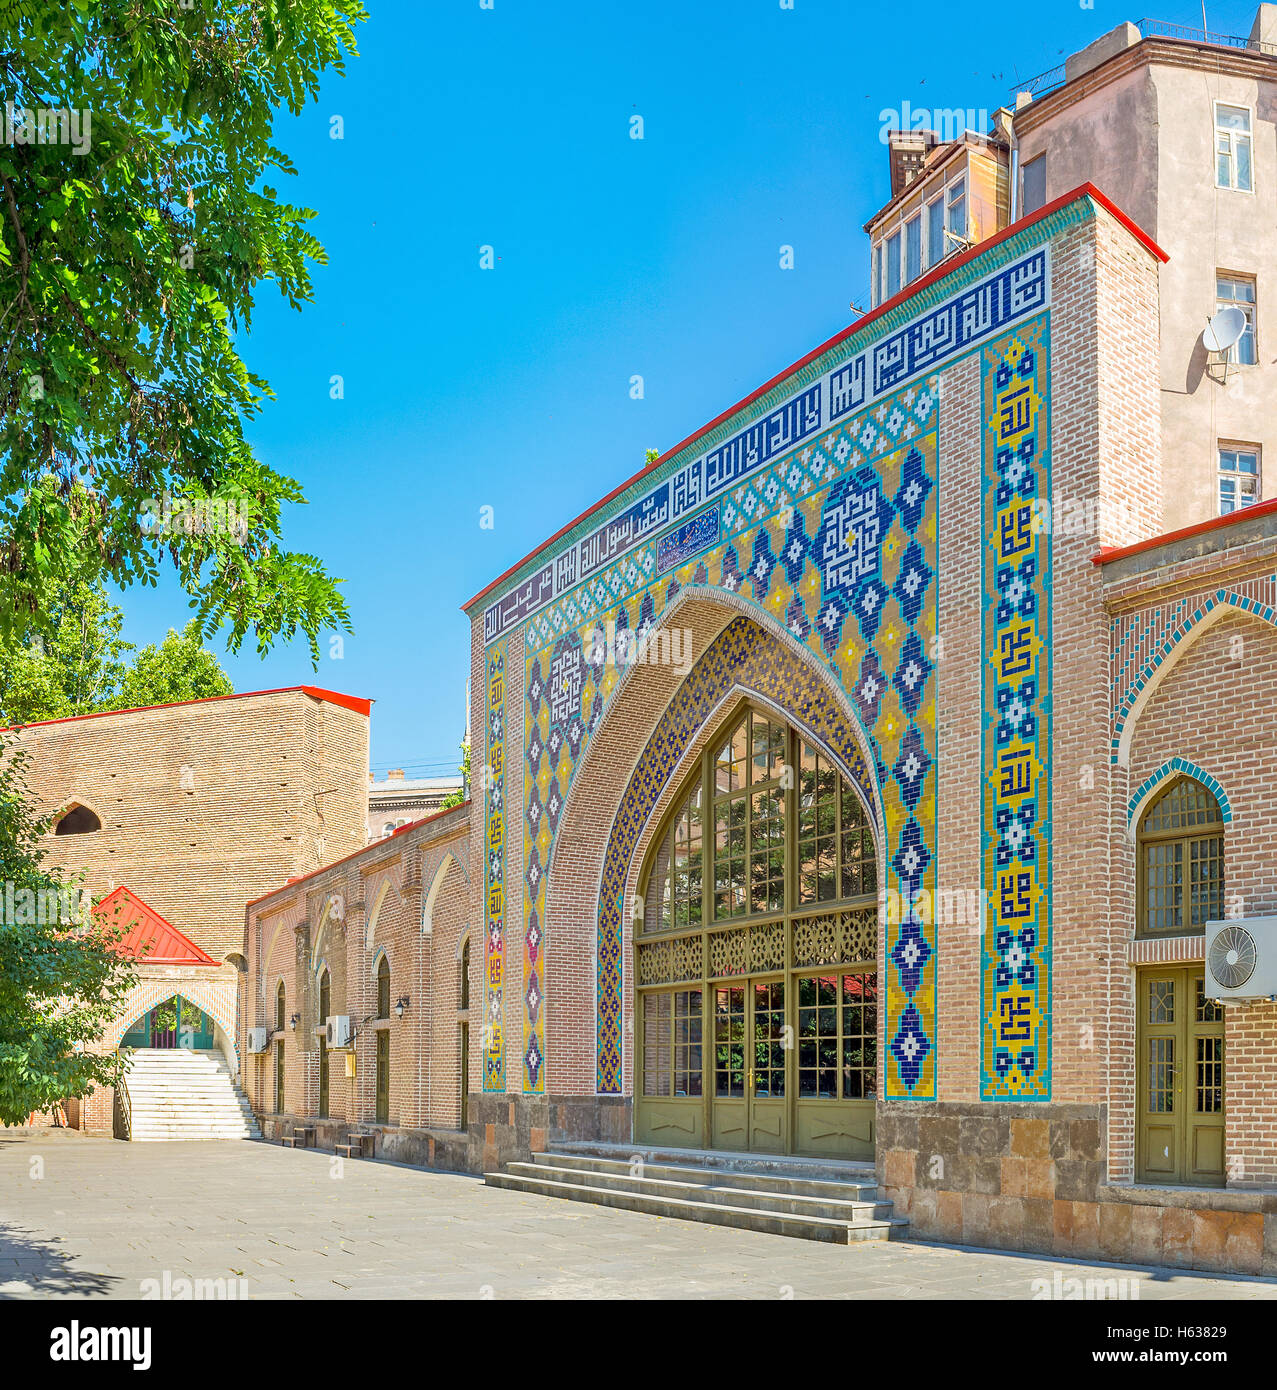 Das zentrale Portal der Medrese, verziert mit bunten Fliesen Muster, direkt neben der blauen Moschee, Yerevan, Armenien. Stockfoto